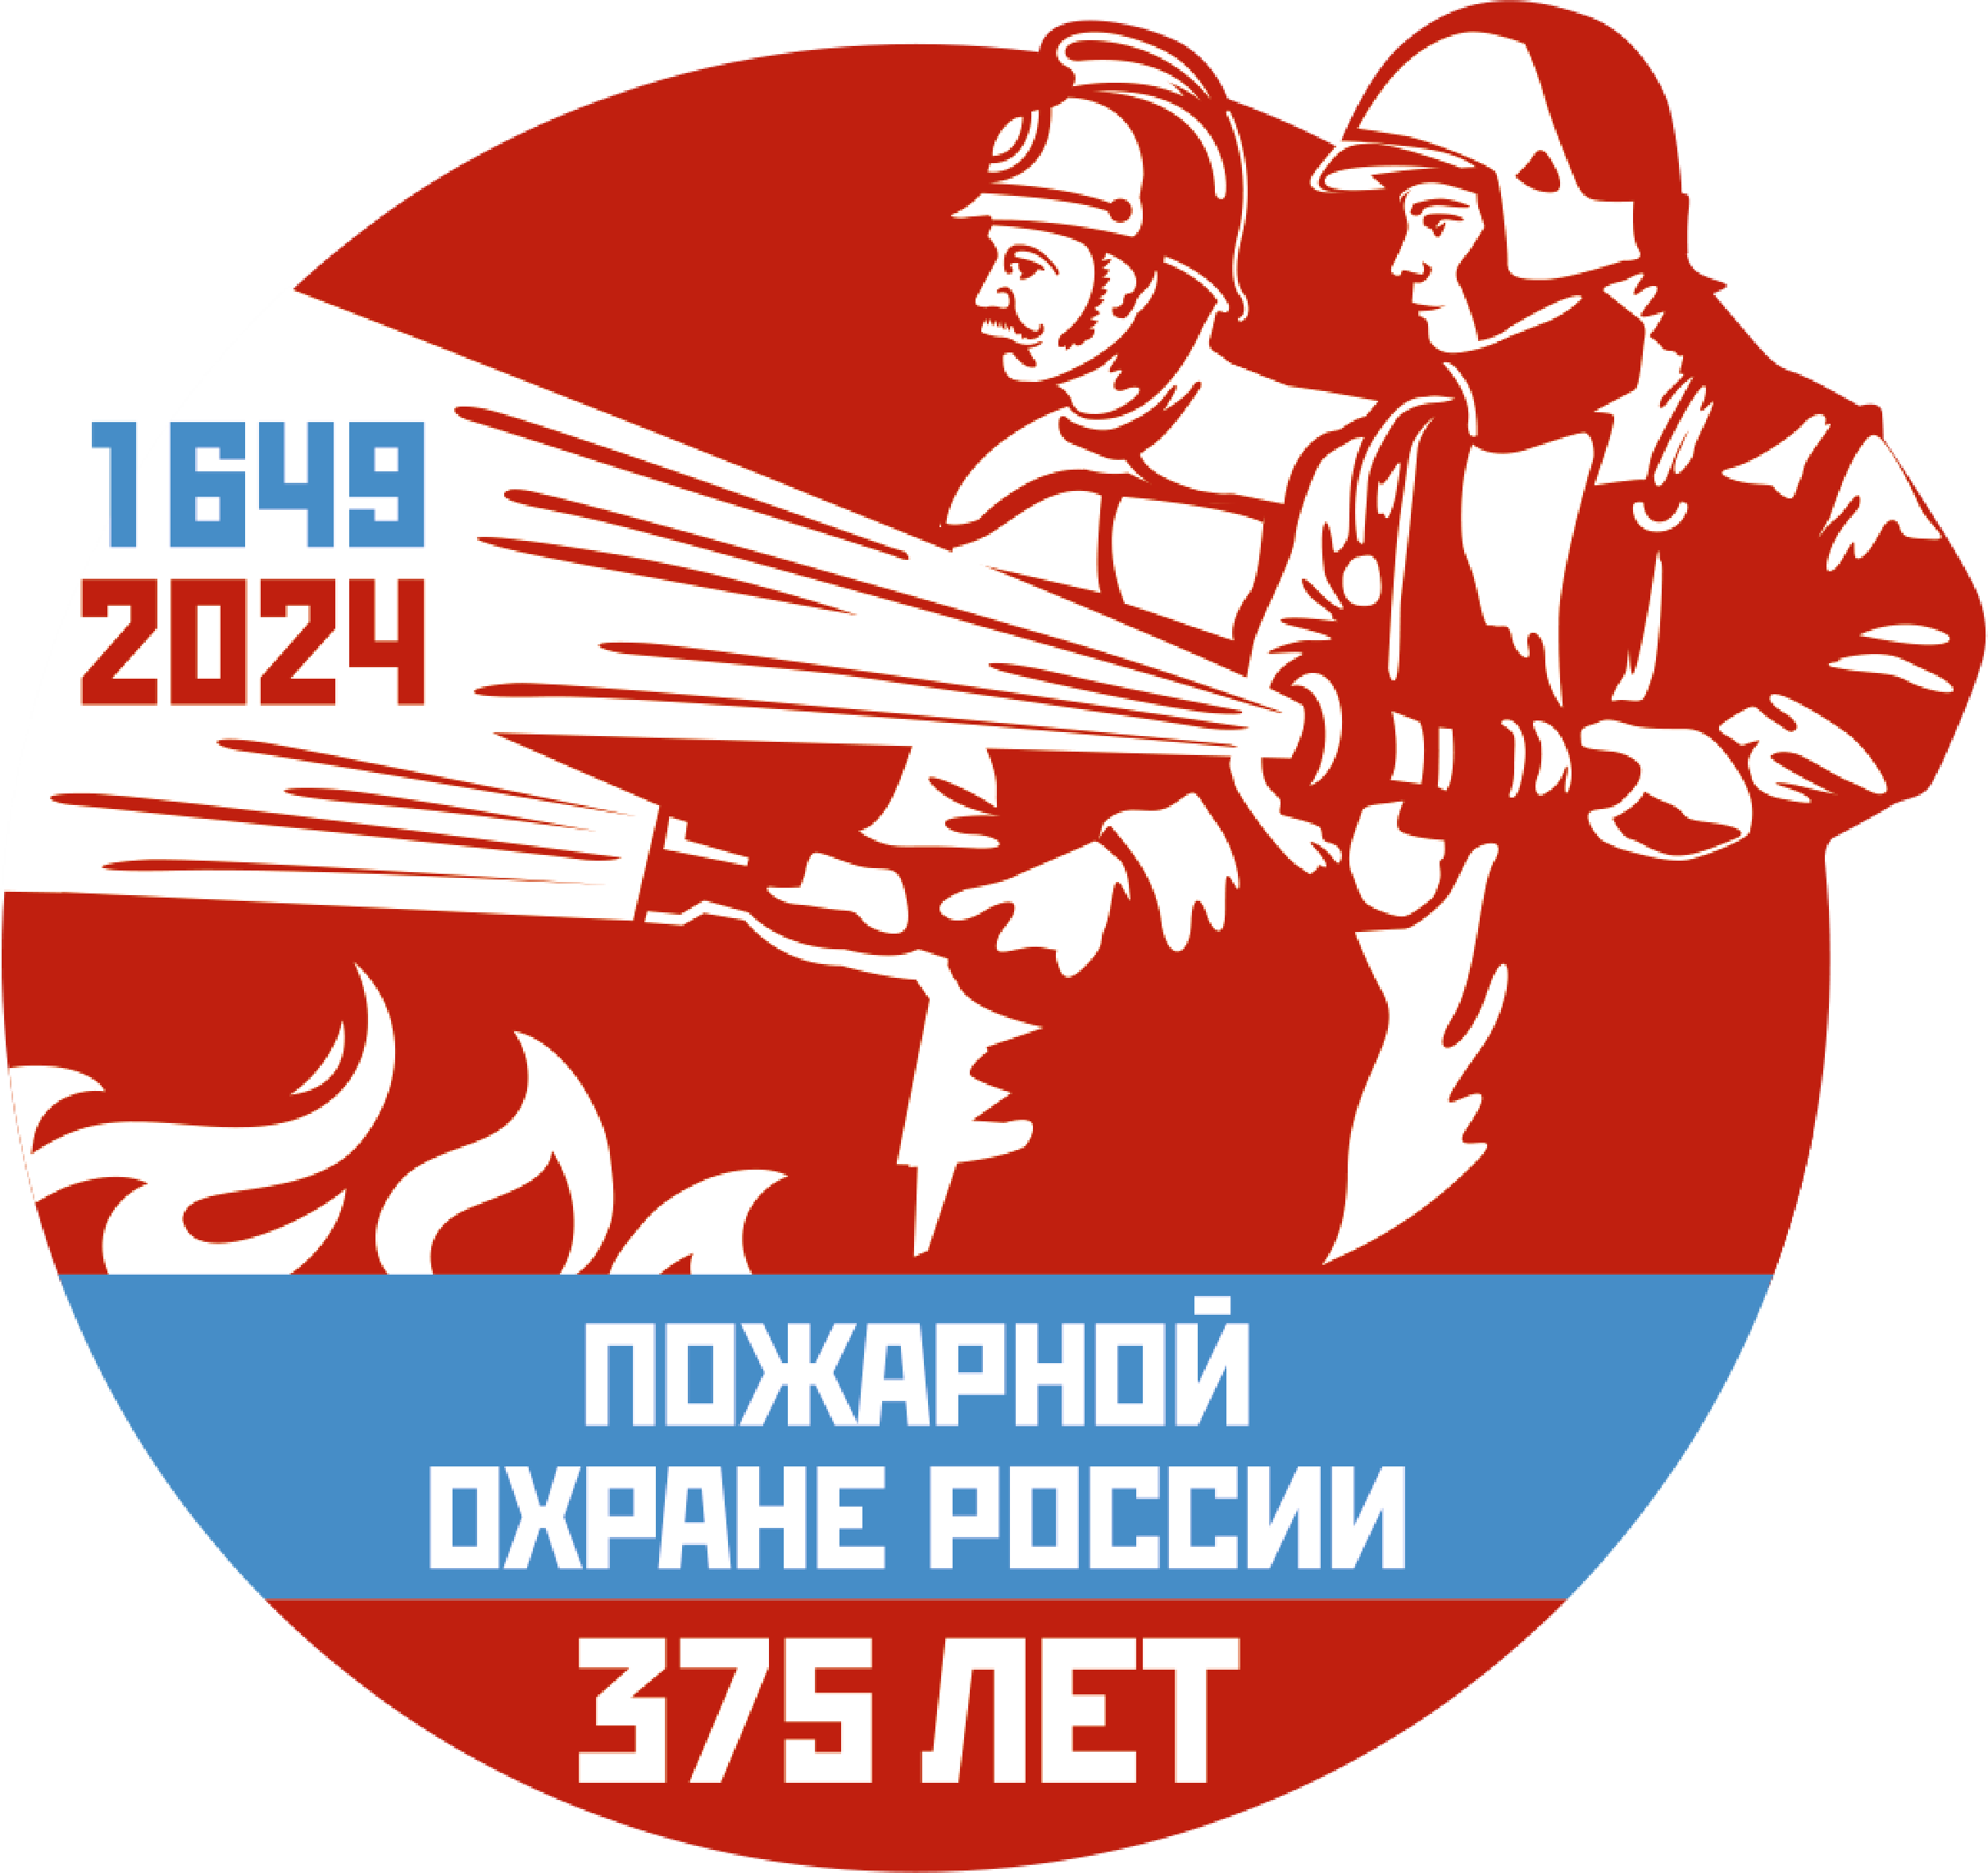 Пожарной охране России 375 лет